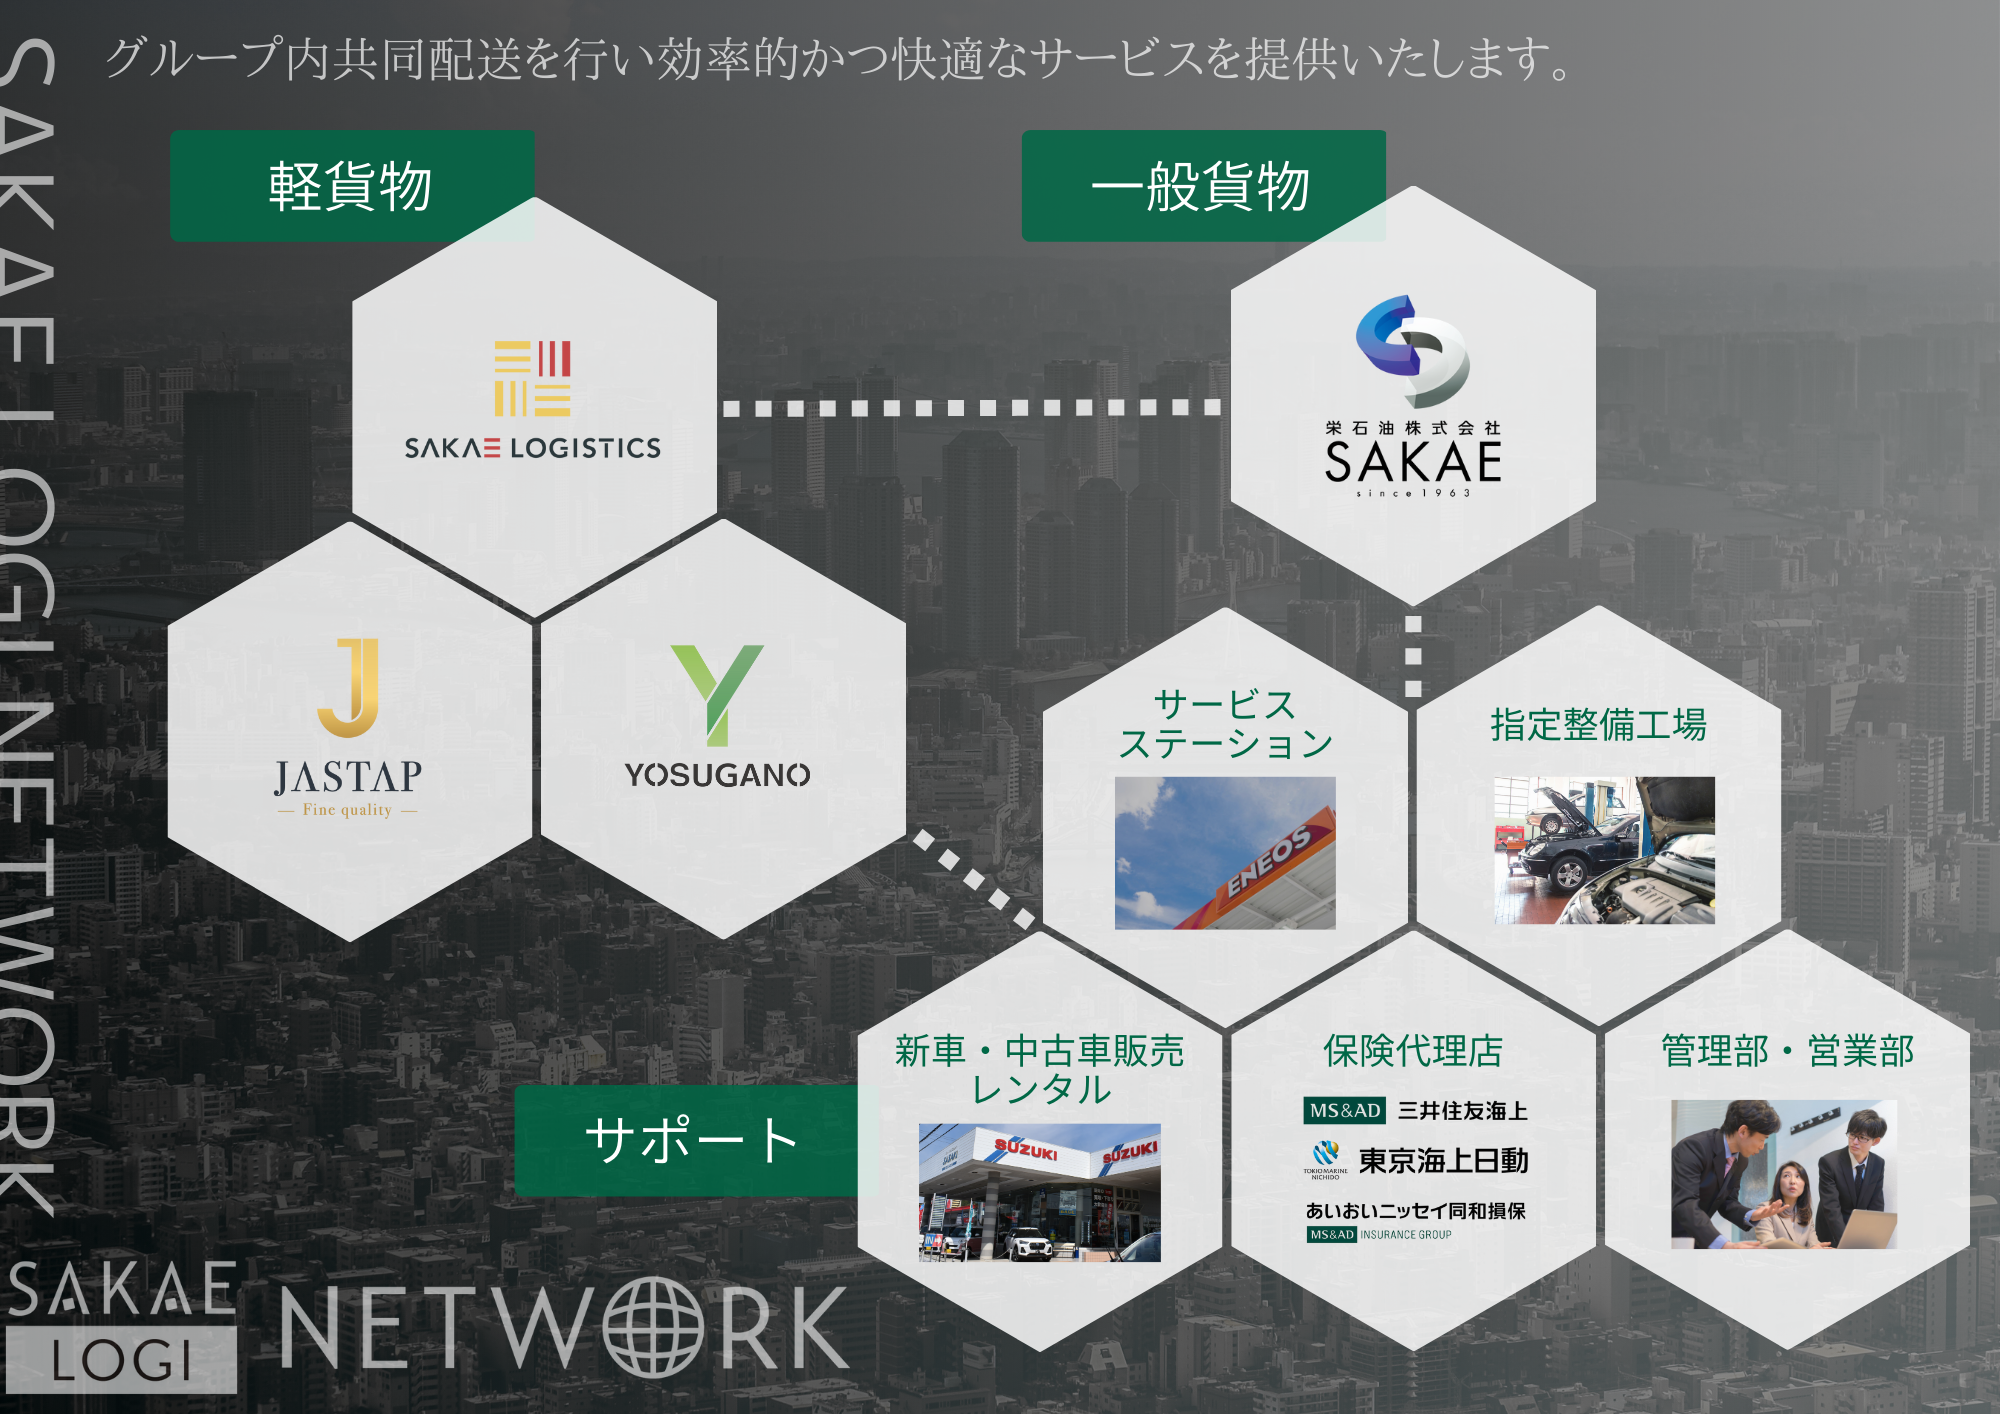 サカエロジネットワーク パンフレット SAKAE LOGI NETWORK サービス内容